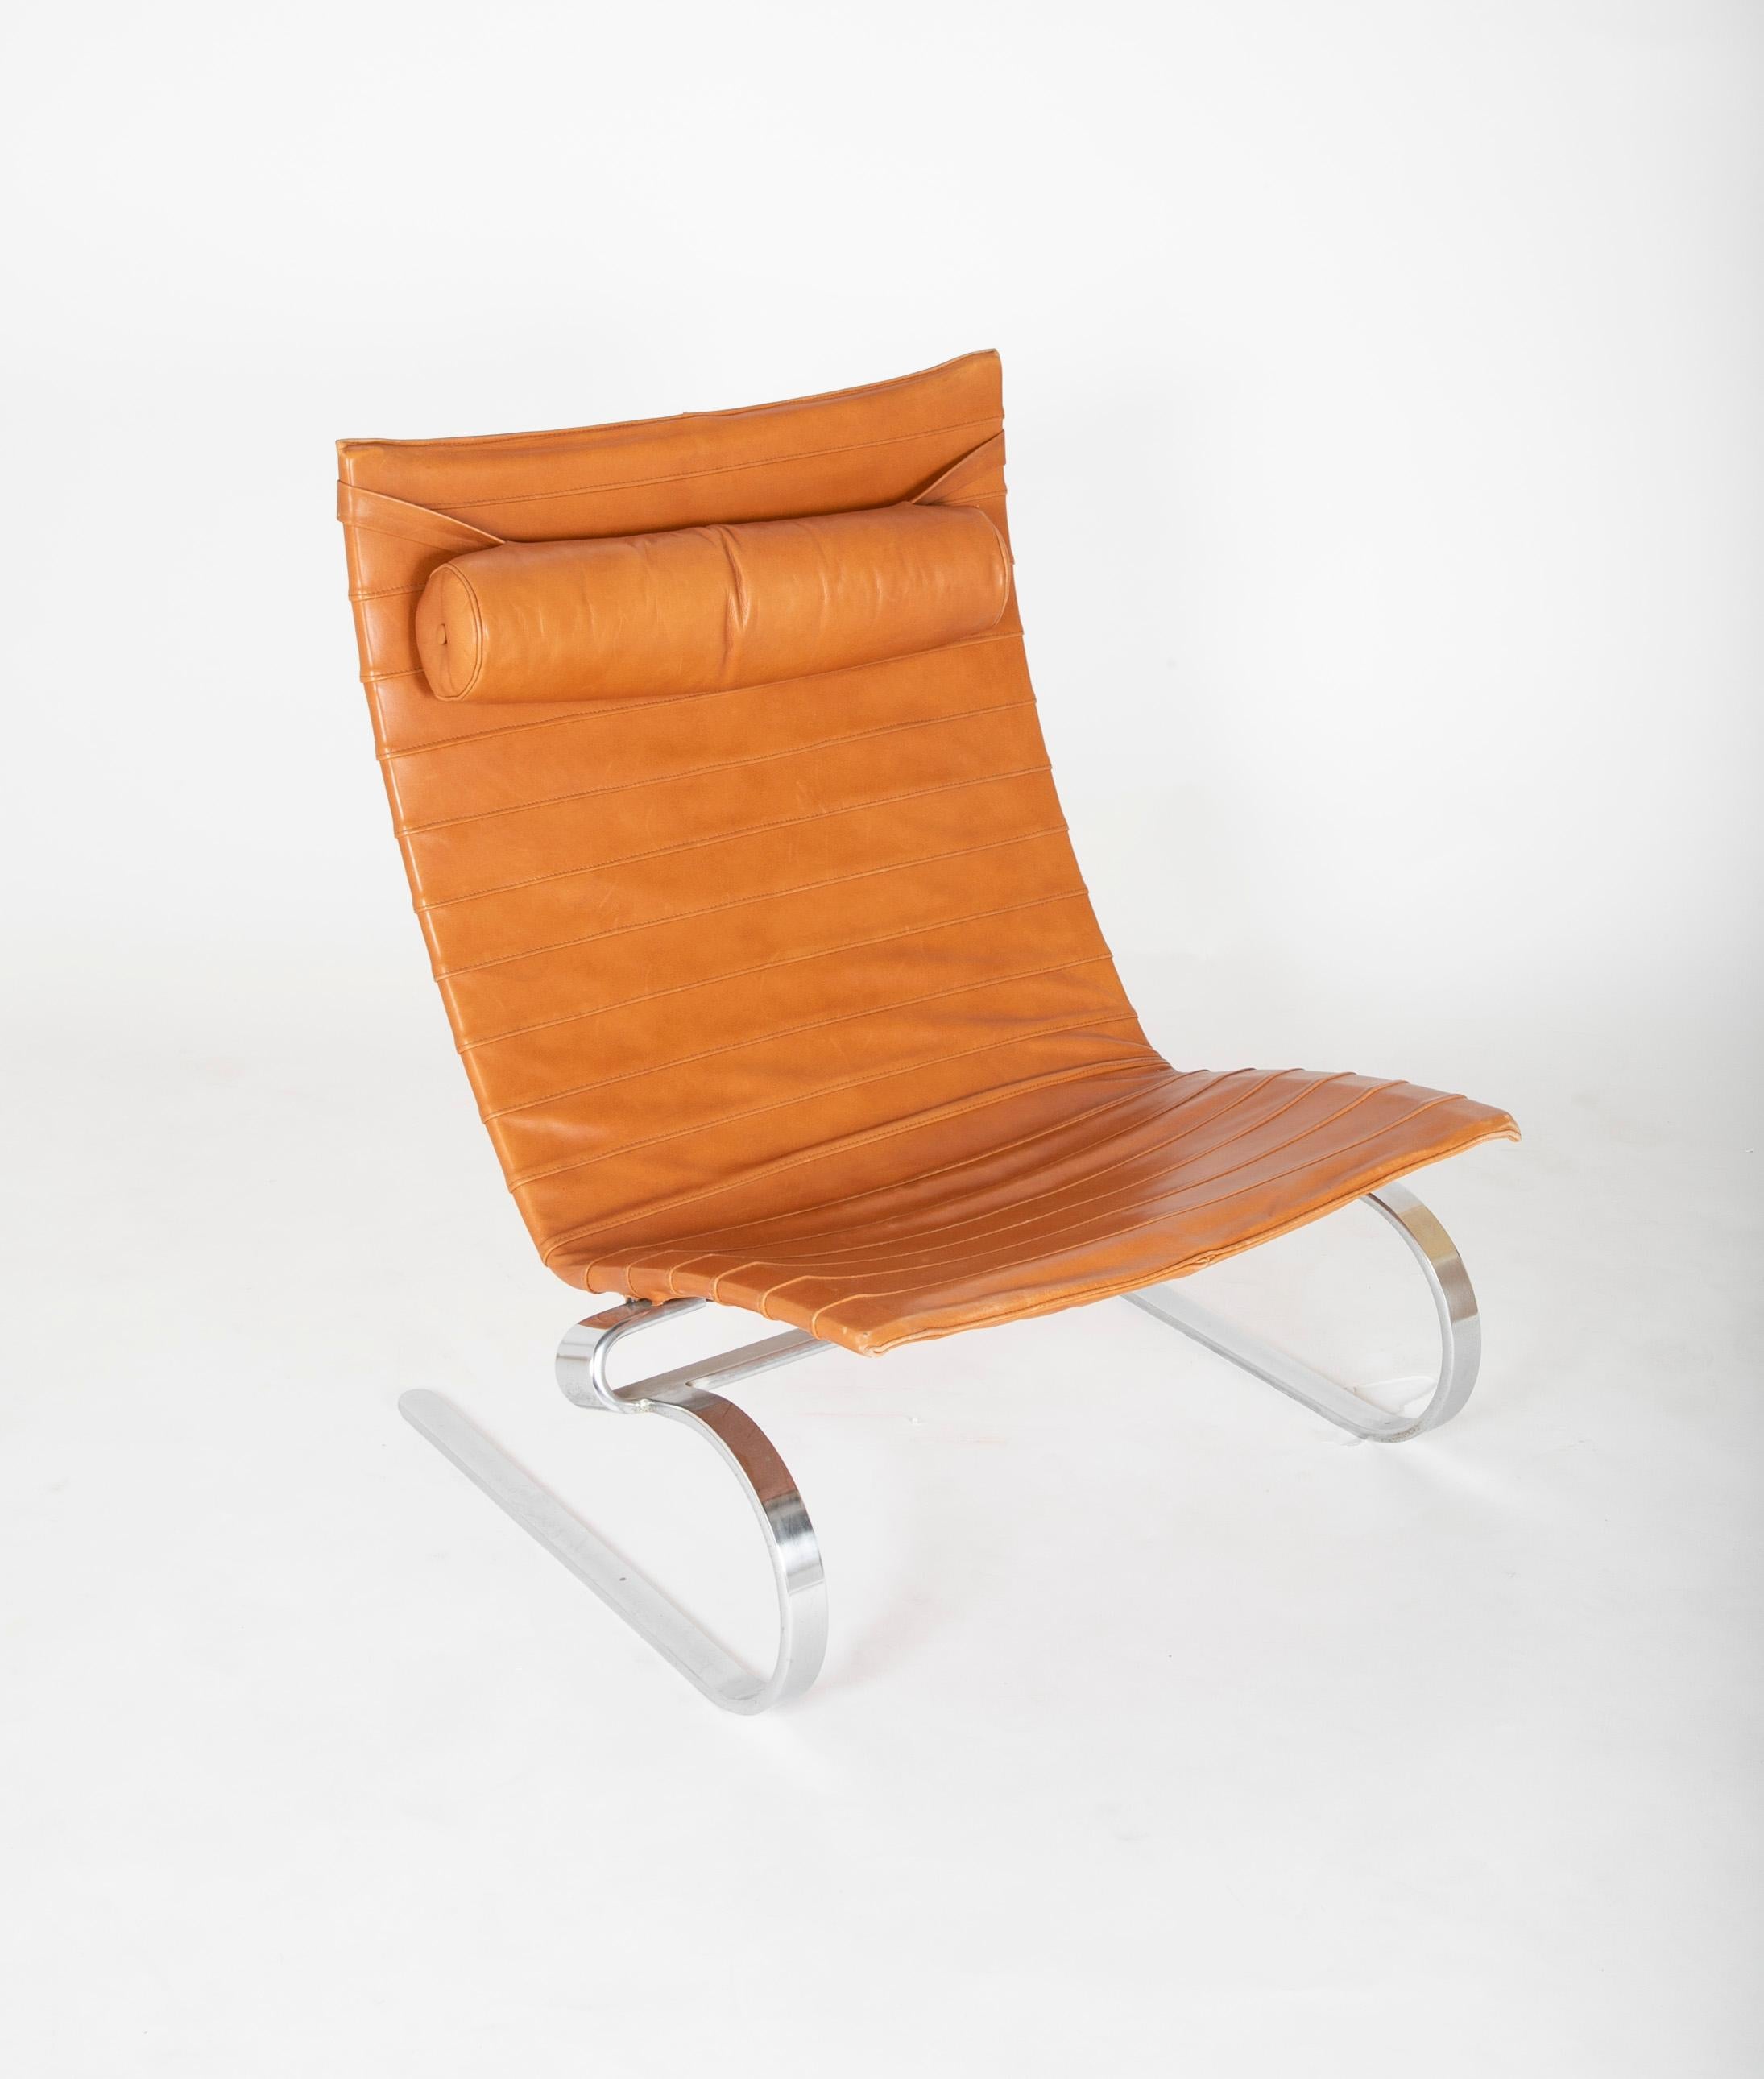 Une chaise PK20 produite par Kold Christensen dans la finition chromée mate emblématique de Poul Kjaeholms. Le cuir est en grande forme, sans taches et reste souple. E. Kold Christensen sur le dessous.